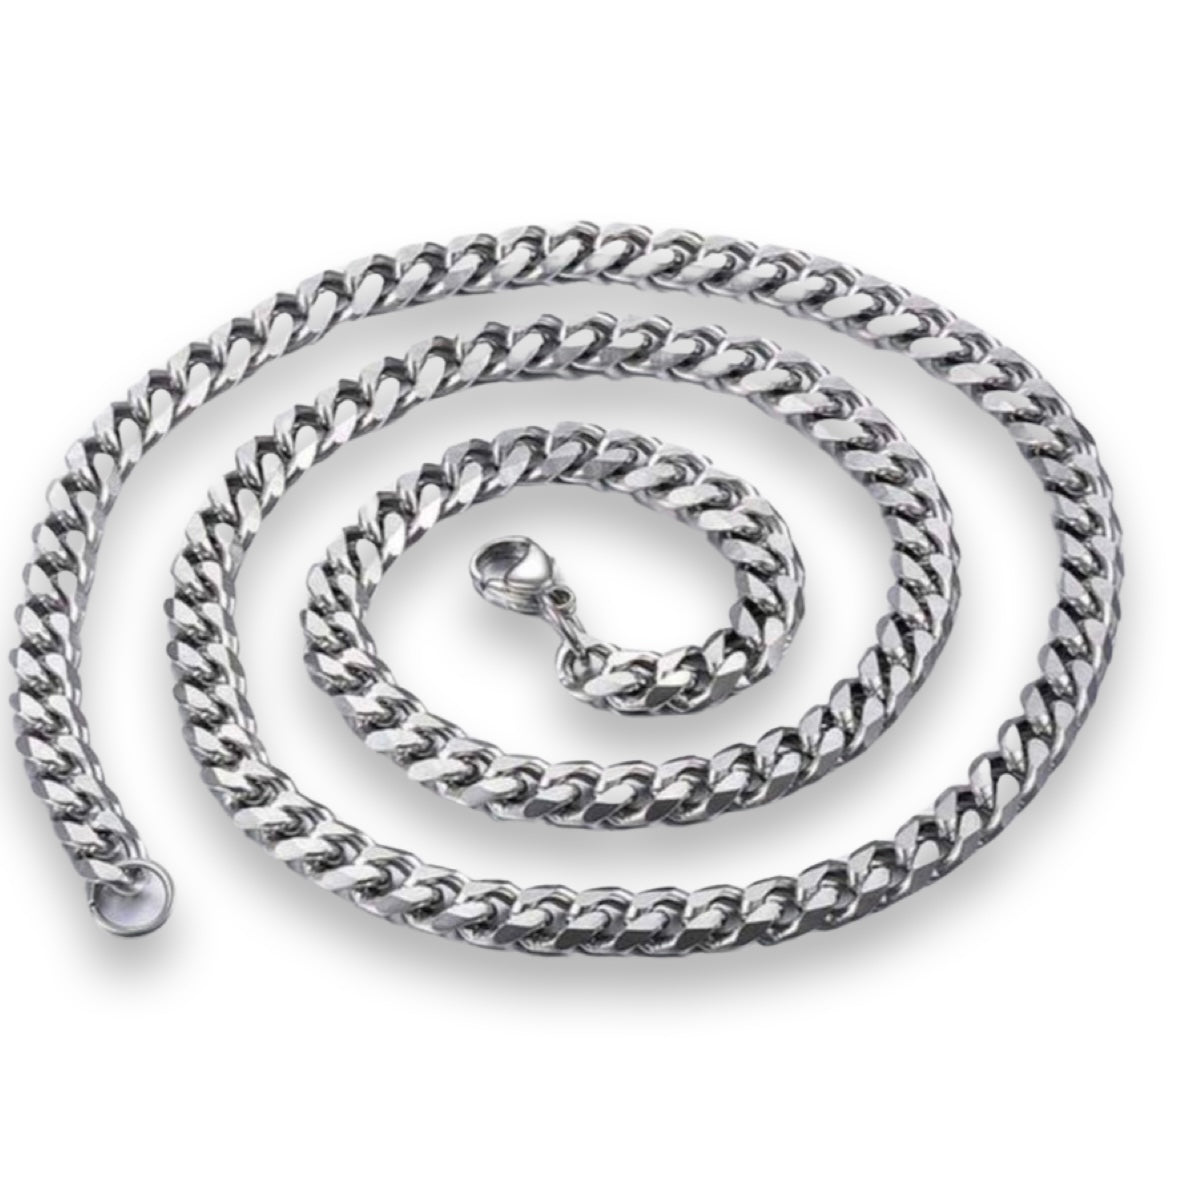 No.5 Silver Necklace